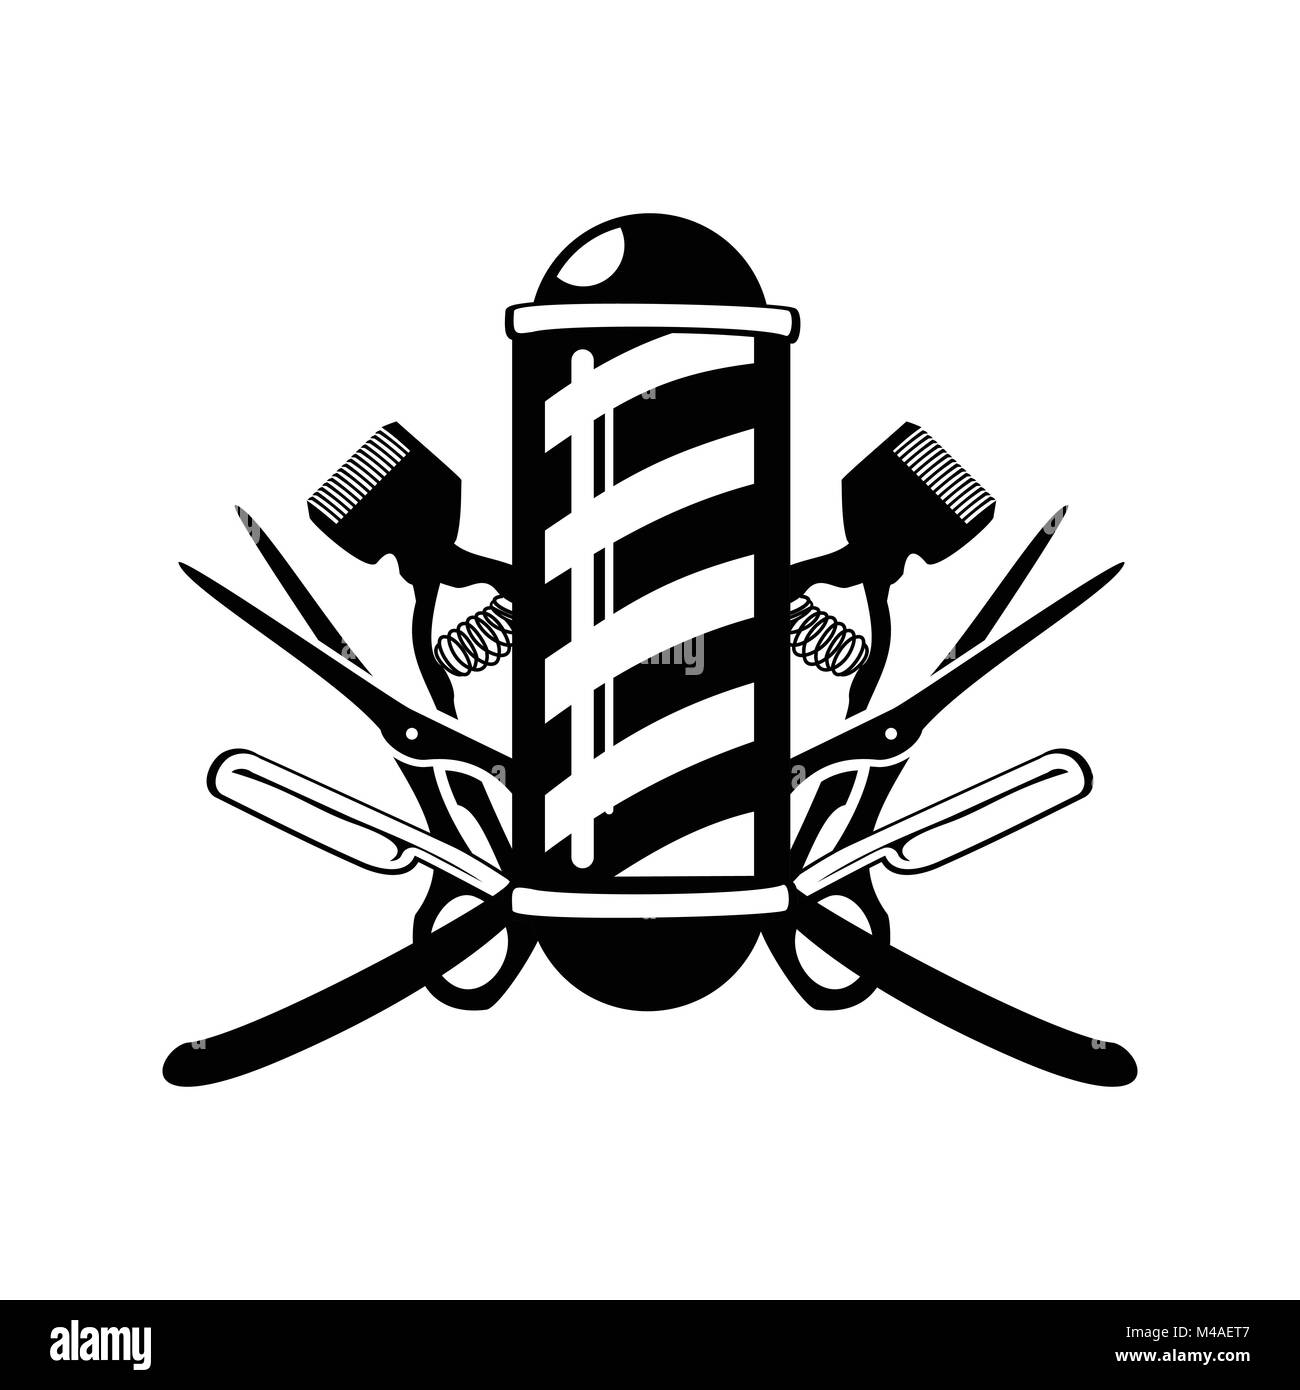 Barbiere Pole con forbici, il rasoio e il vecchio Clippers emblema simbolo Vector Graphic Design badge Illustrazione Vettoriale